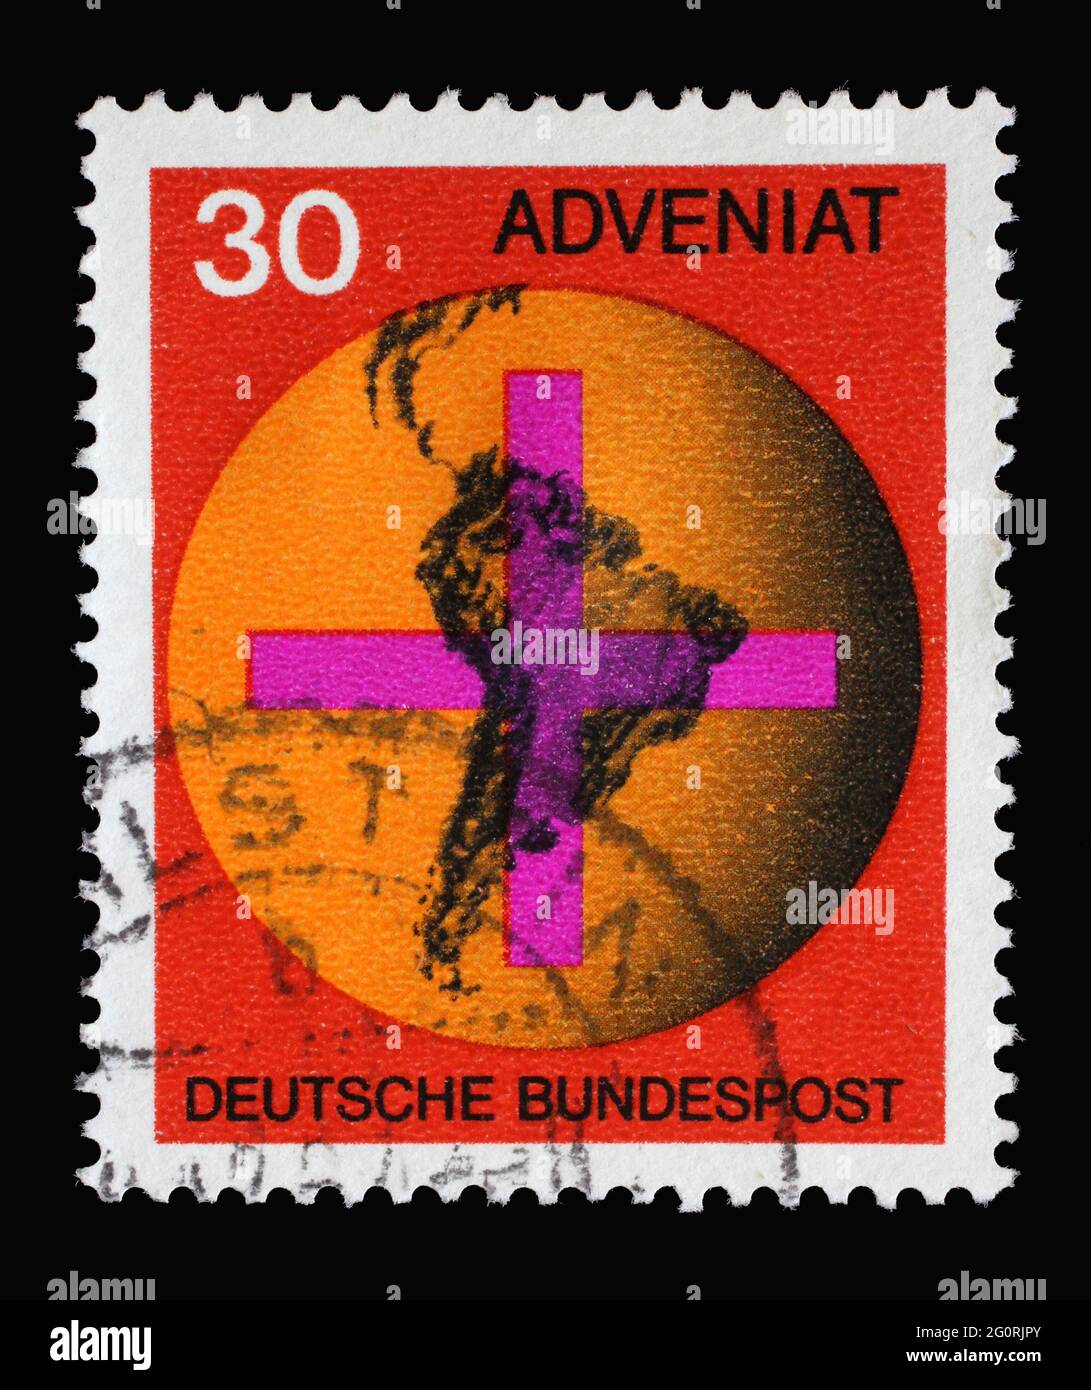 In Deutschland gedruckte Briefmarke mit Kreuz vor einem Globus mit südamerikanischer Landkarte, „Adveniat“, Hilfsbewegung deutscher Katholiken für Lateinamerika Stockfoto